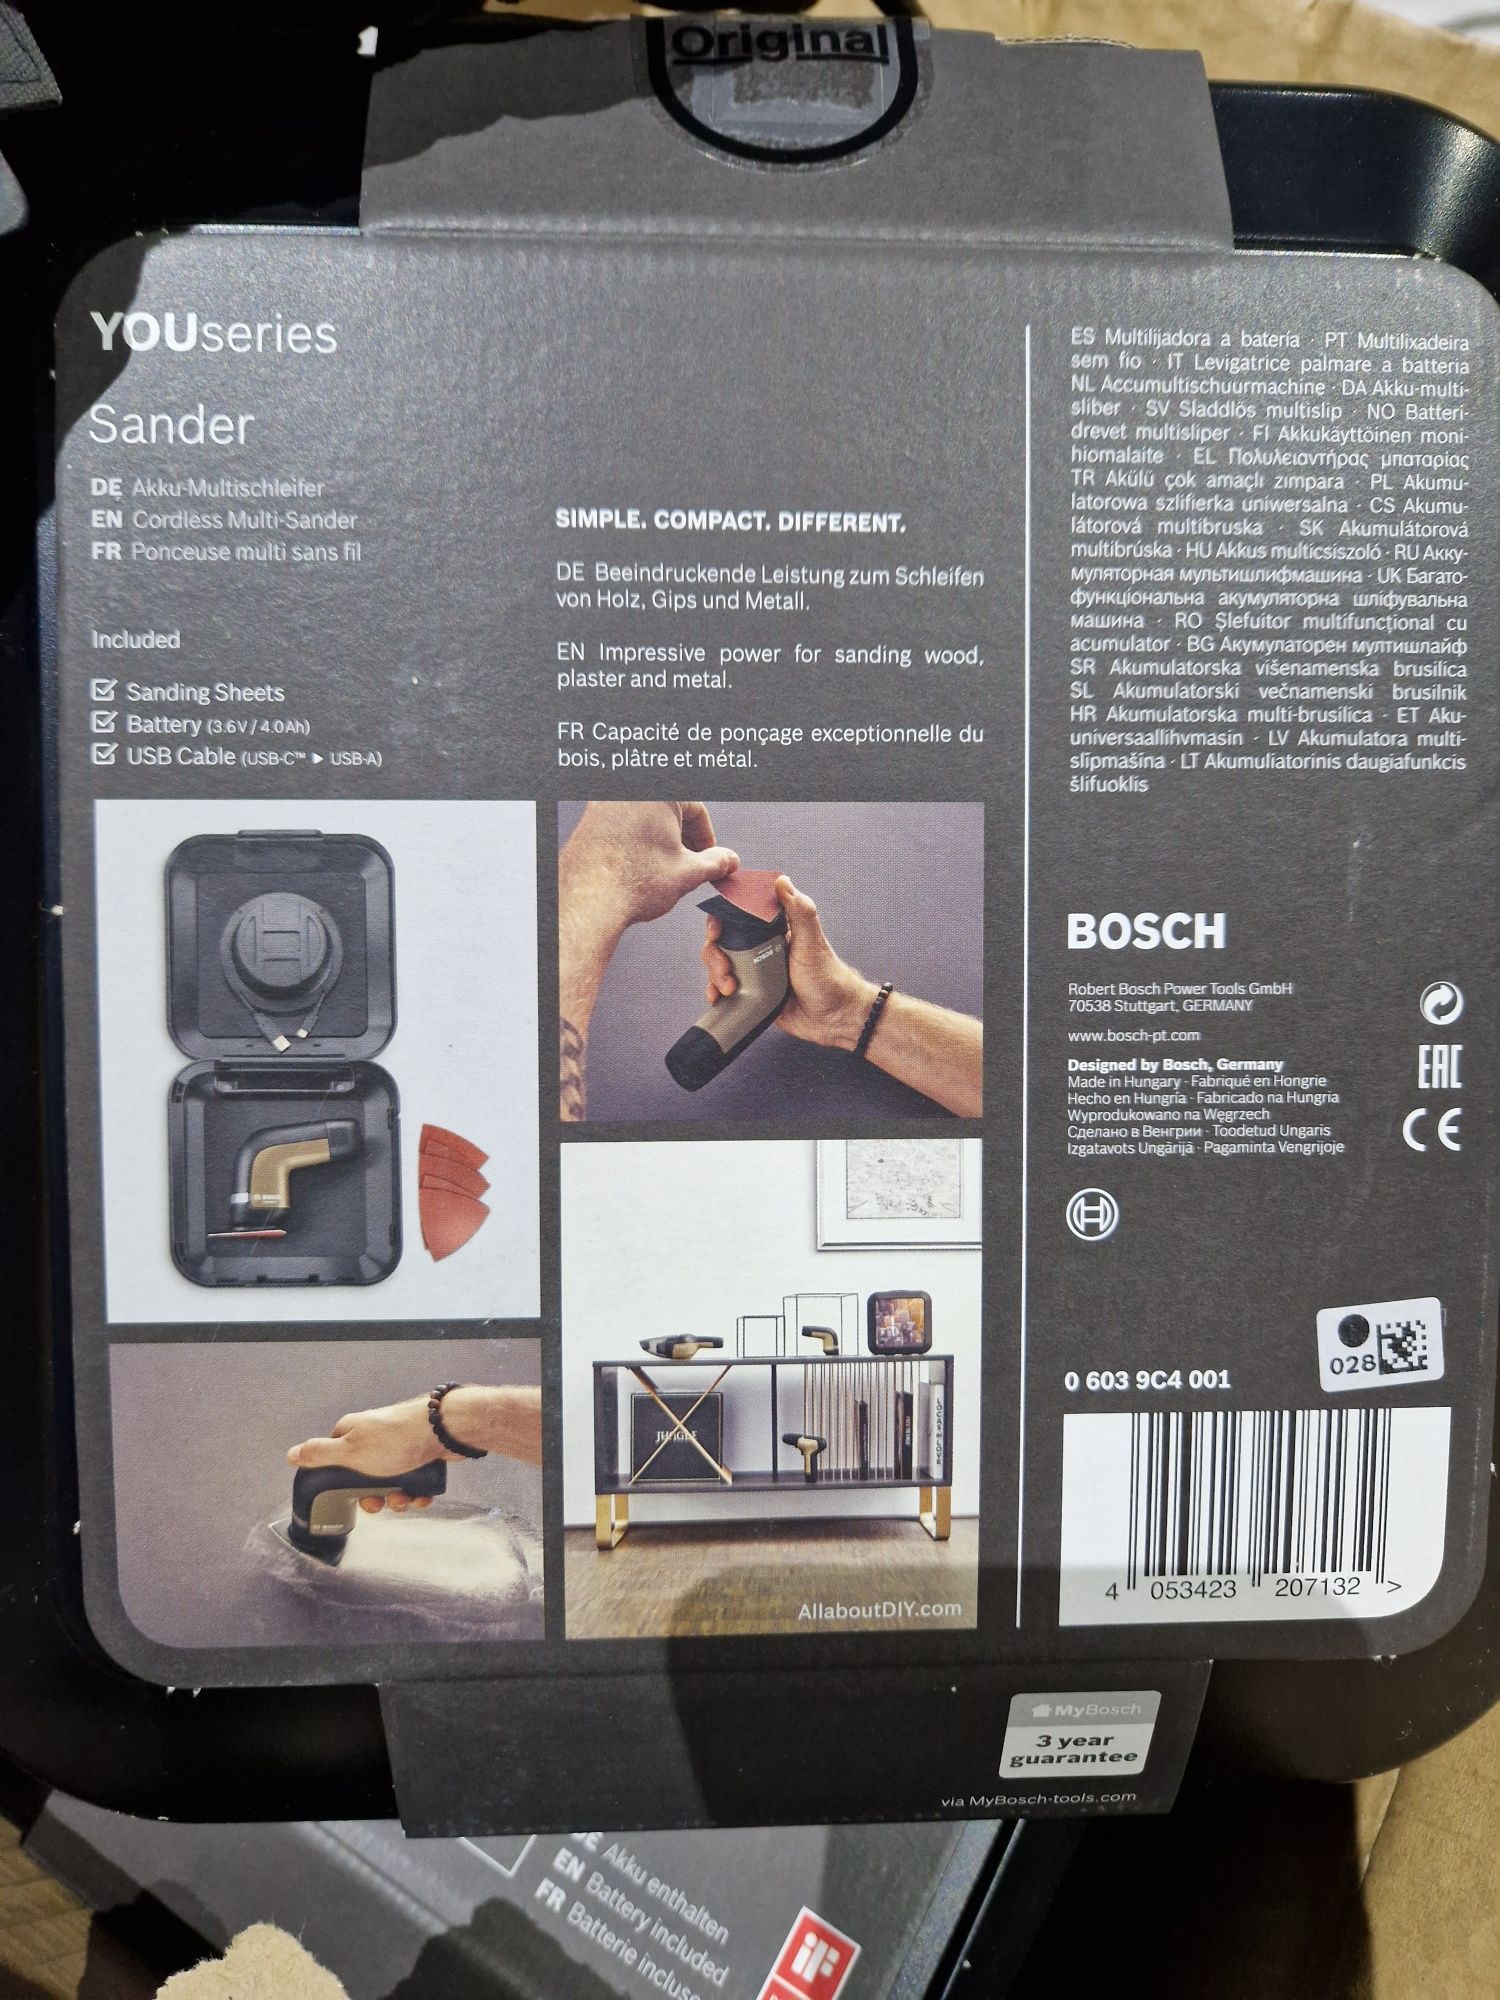 Slefuitor Bosch nou, preț redus la jumatate